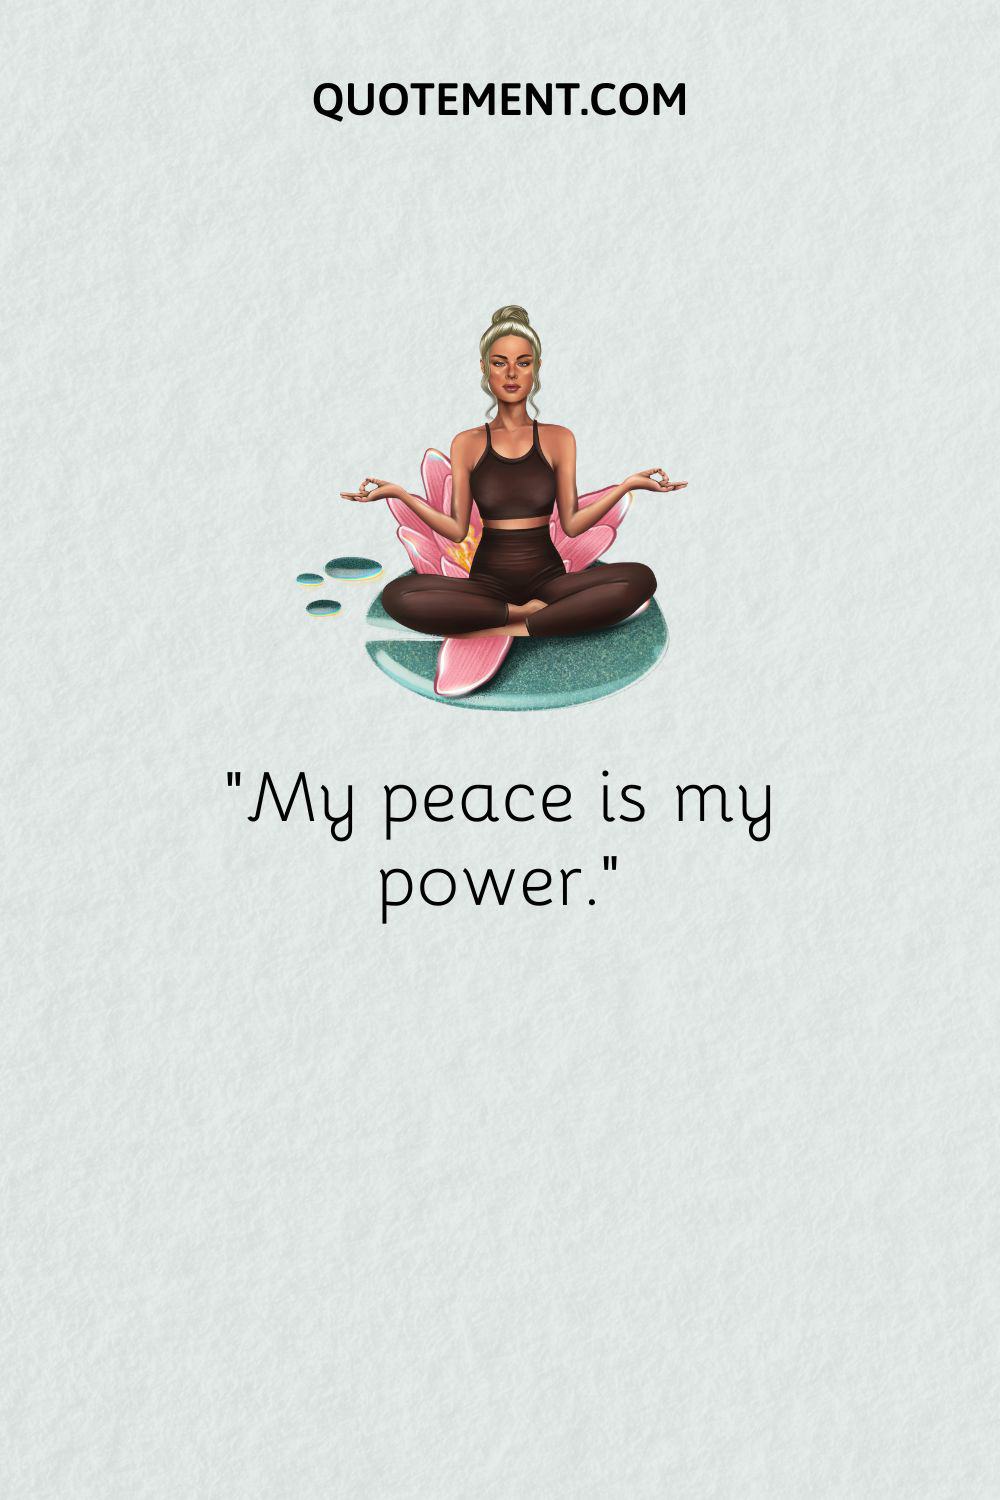 blonde girl meditating image representing positive affirmation for self love